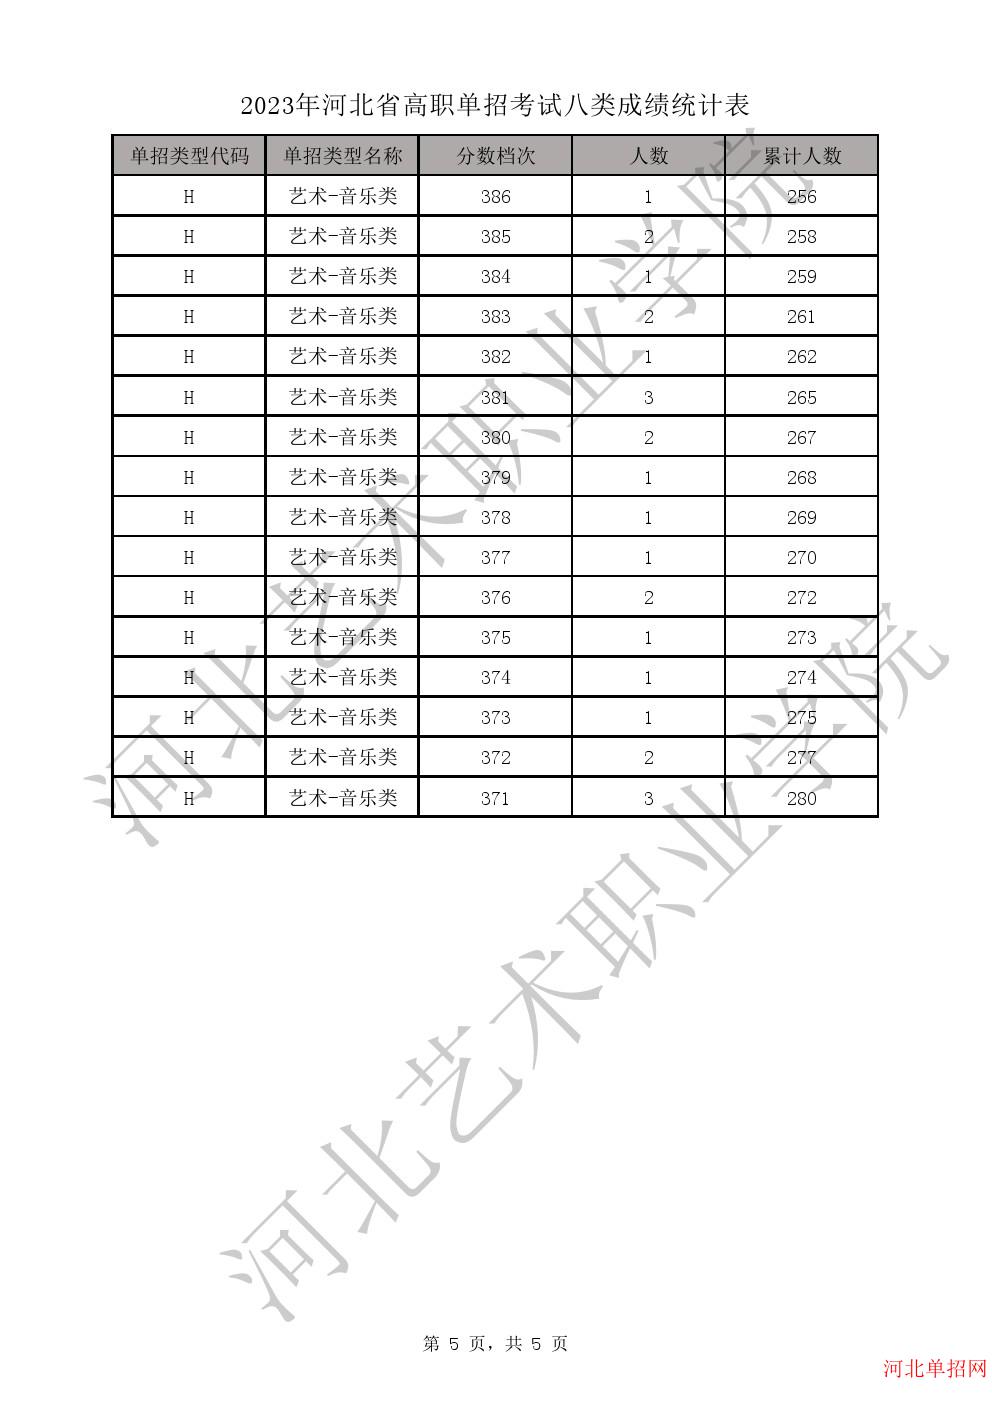 2023年河北省高职单招考试八类成绩统计表-H艺术-音乐类一分一档表 图5